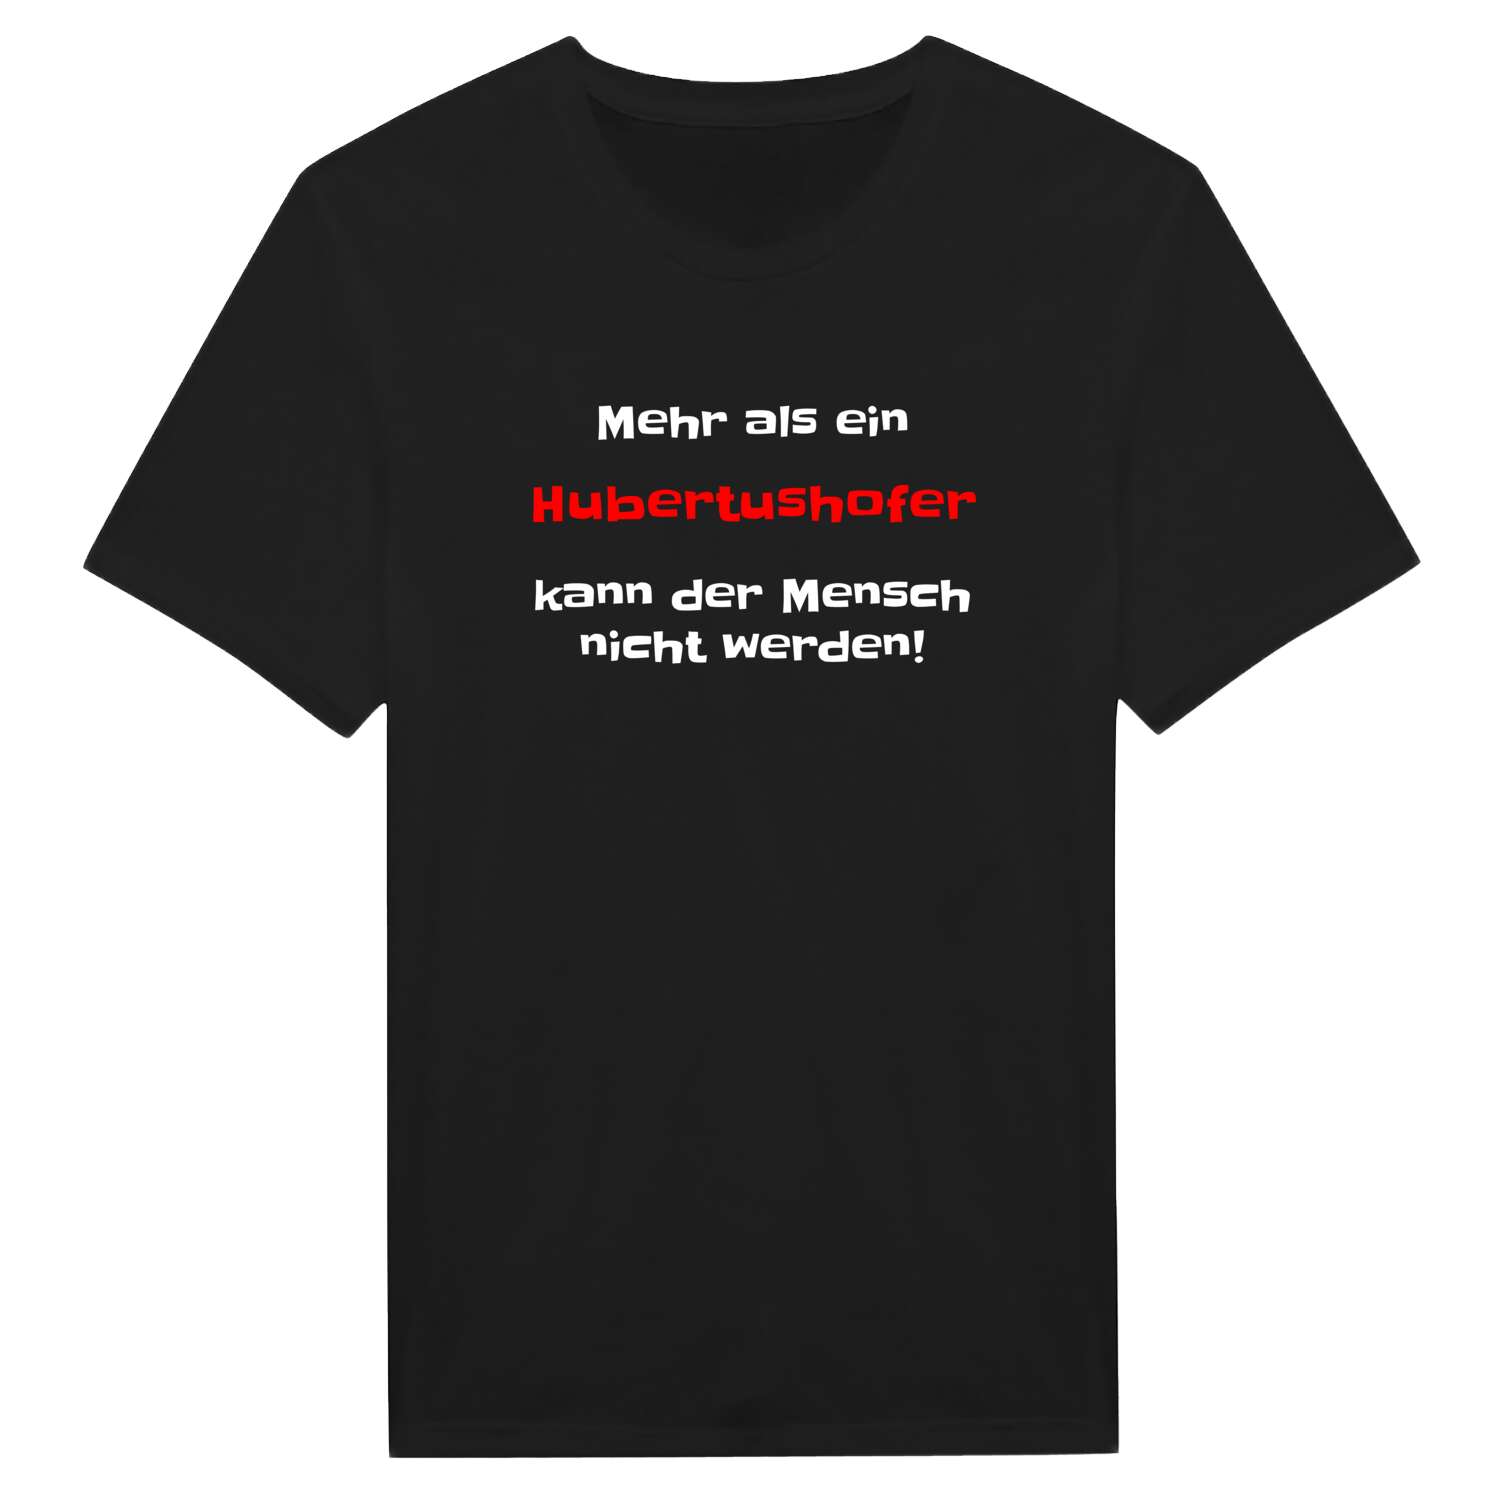 Hubertushof T-Shirt »Mehr als ein«